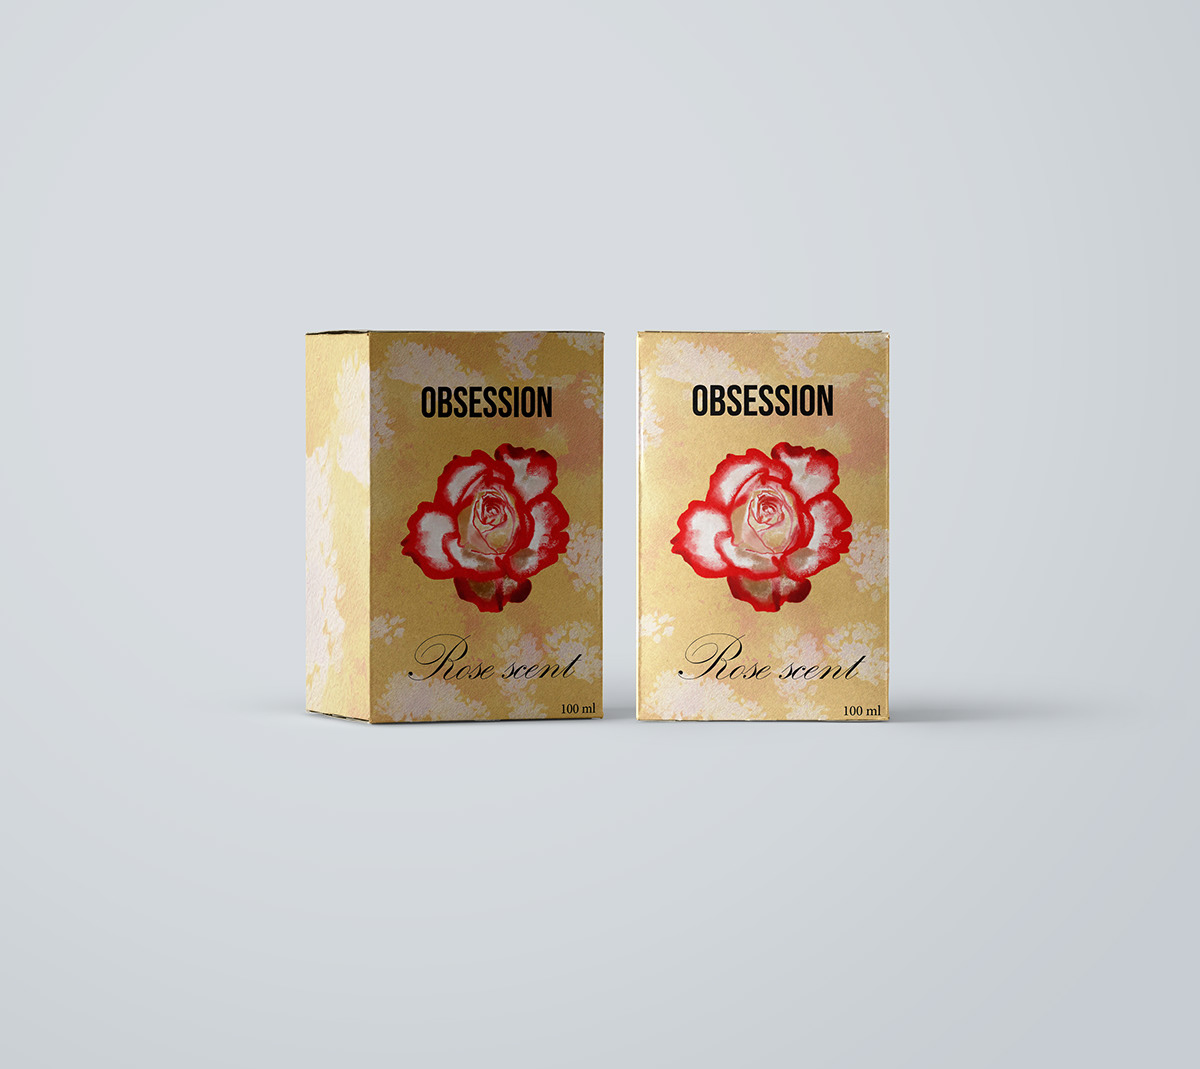 branding  csomagolastervezes design marketing   package Packaging packaging design product product design 